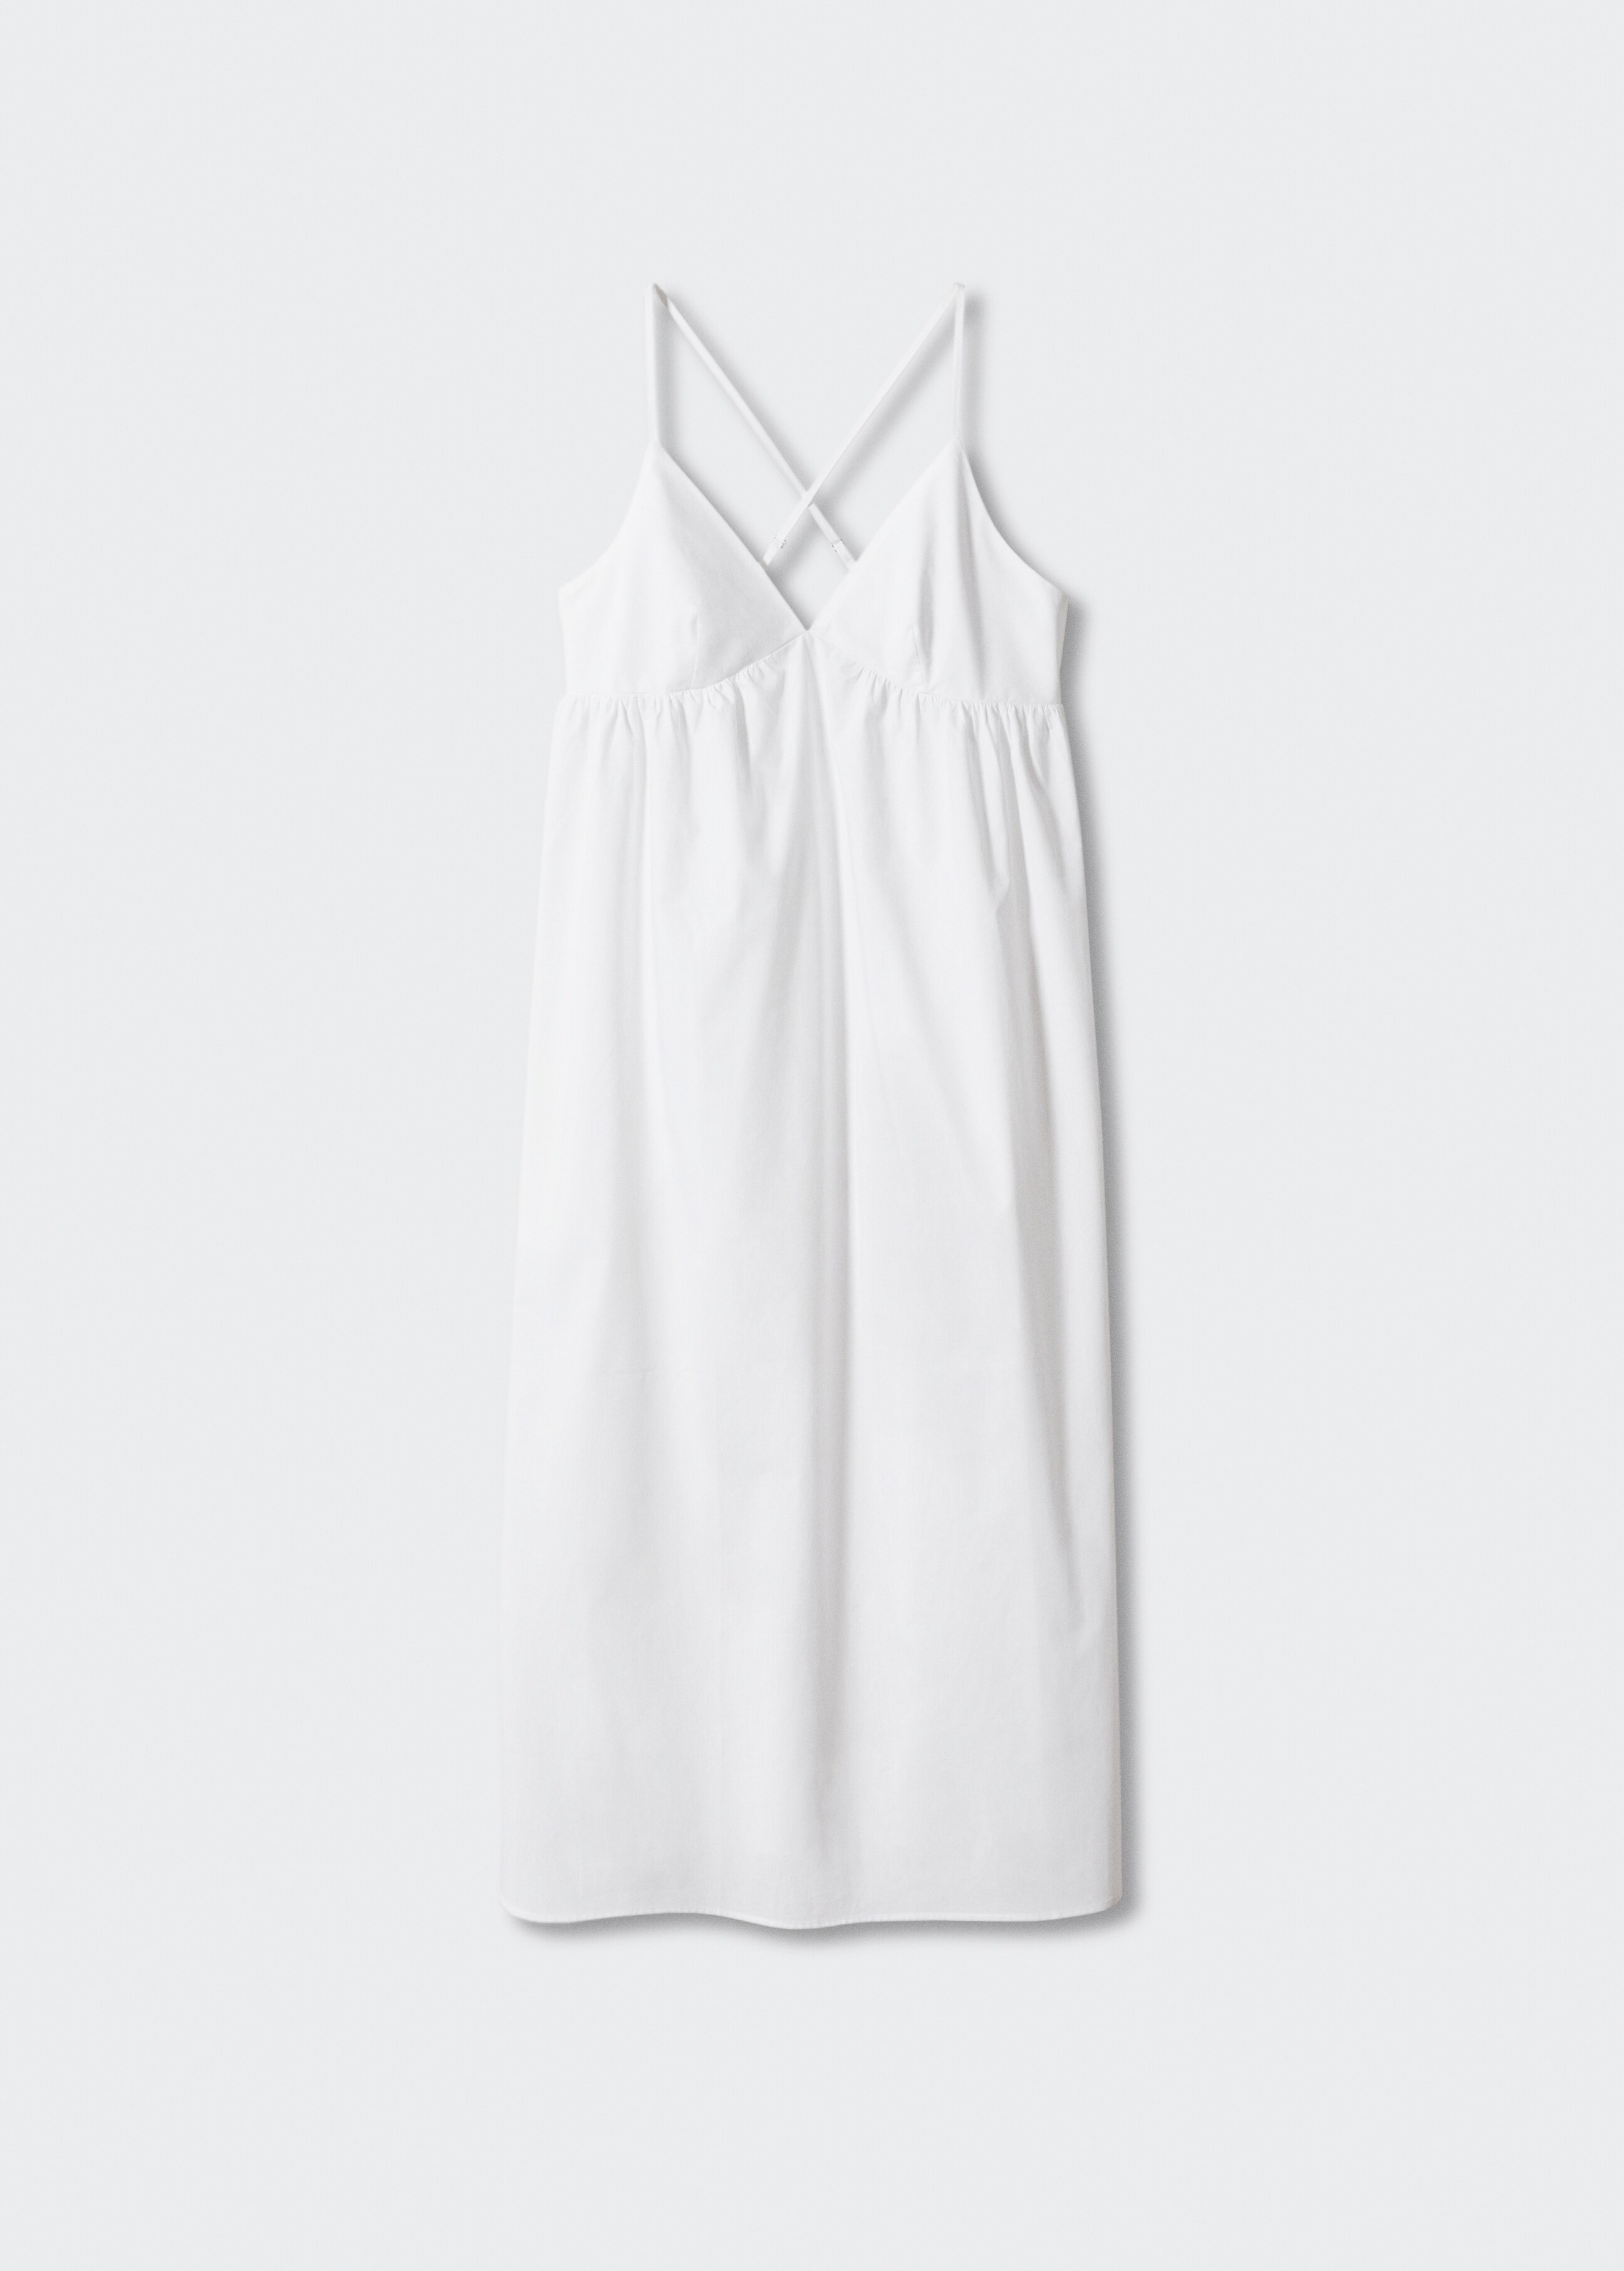 Φόρεμα βαμβάκι χιαστί πλάτη - Προϊόν χωρίς μοντέλο